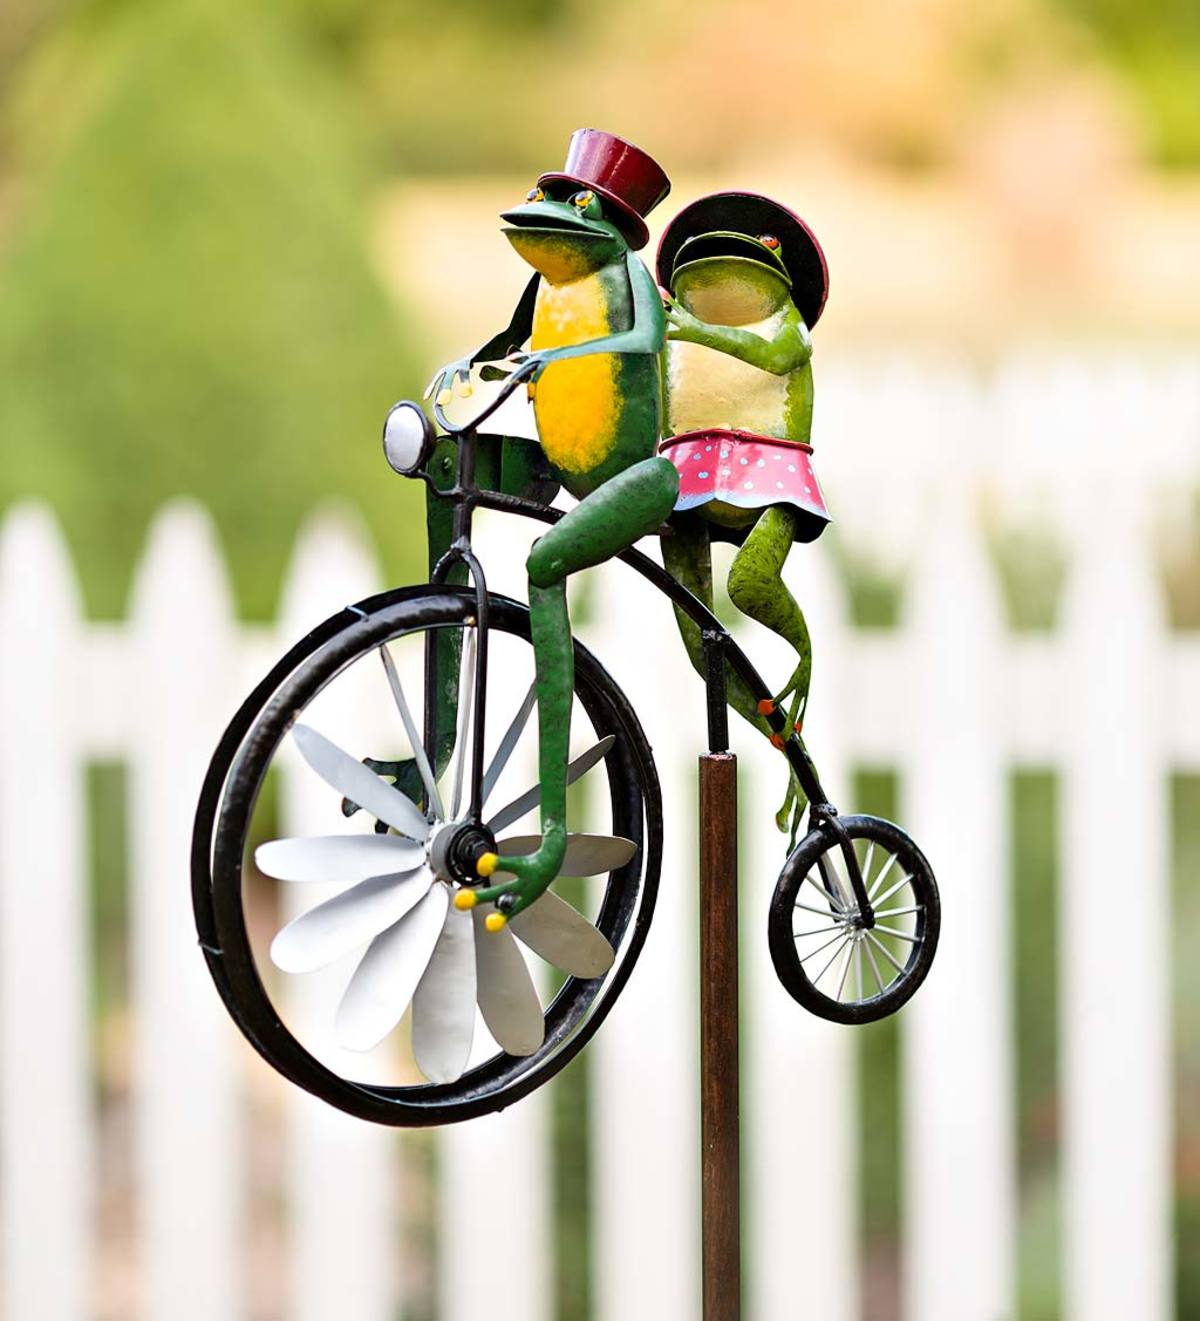 Whirligig Garden Stake by Premier Design 30" TREE FROG on a Bike Spinner